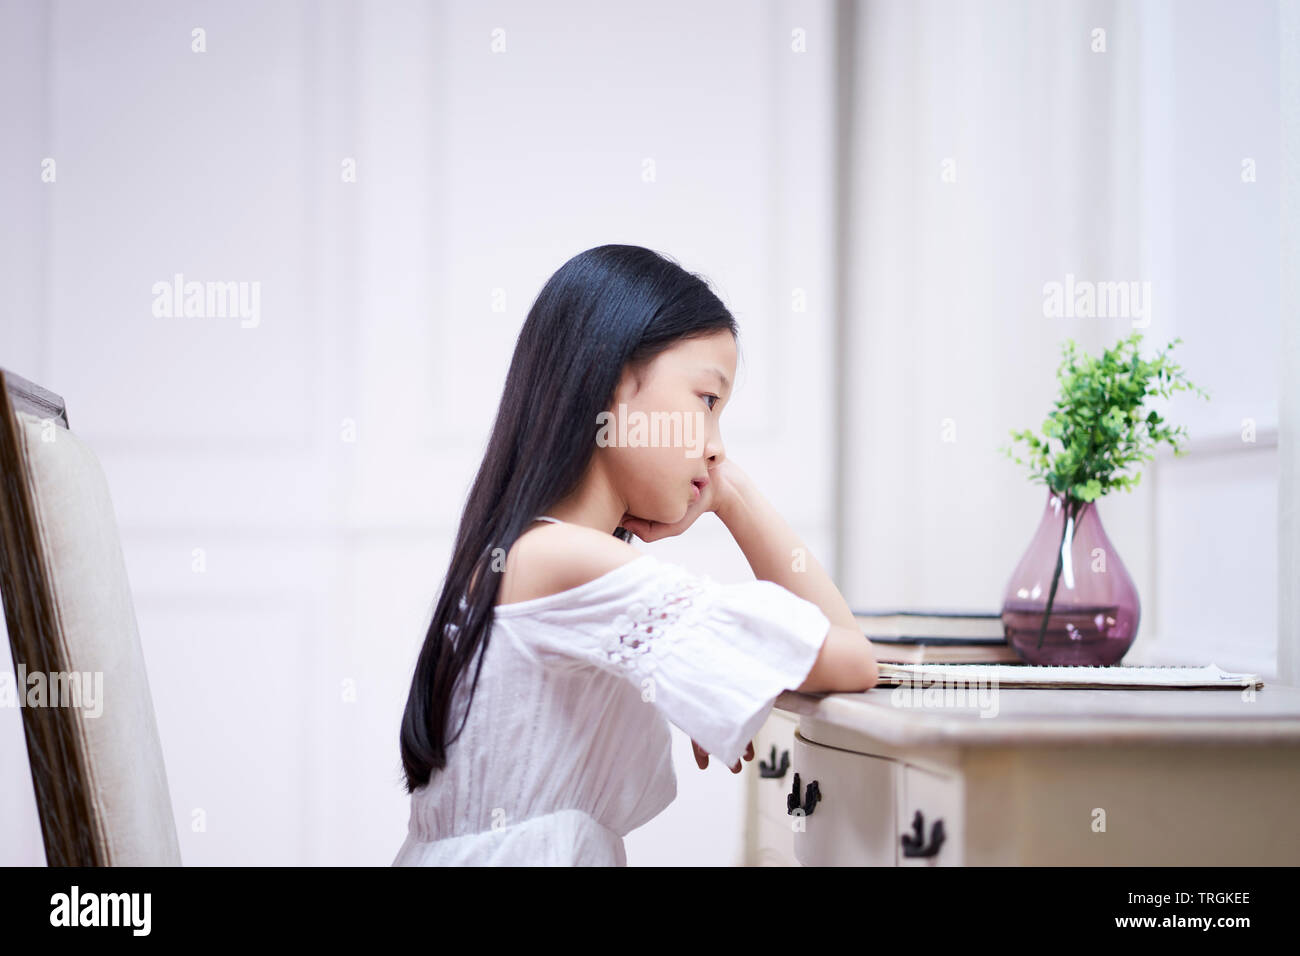 Triste petite fille asiatique avec de longs cheveux noirs assis à 24 dans sa chambre pensant with hand on chin Banque D'Images